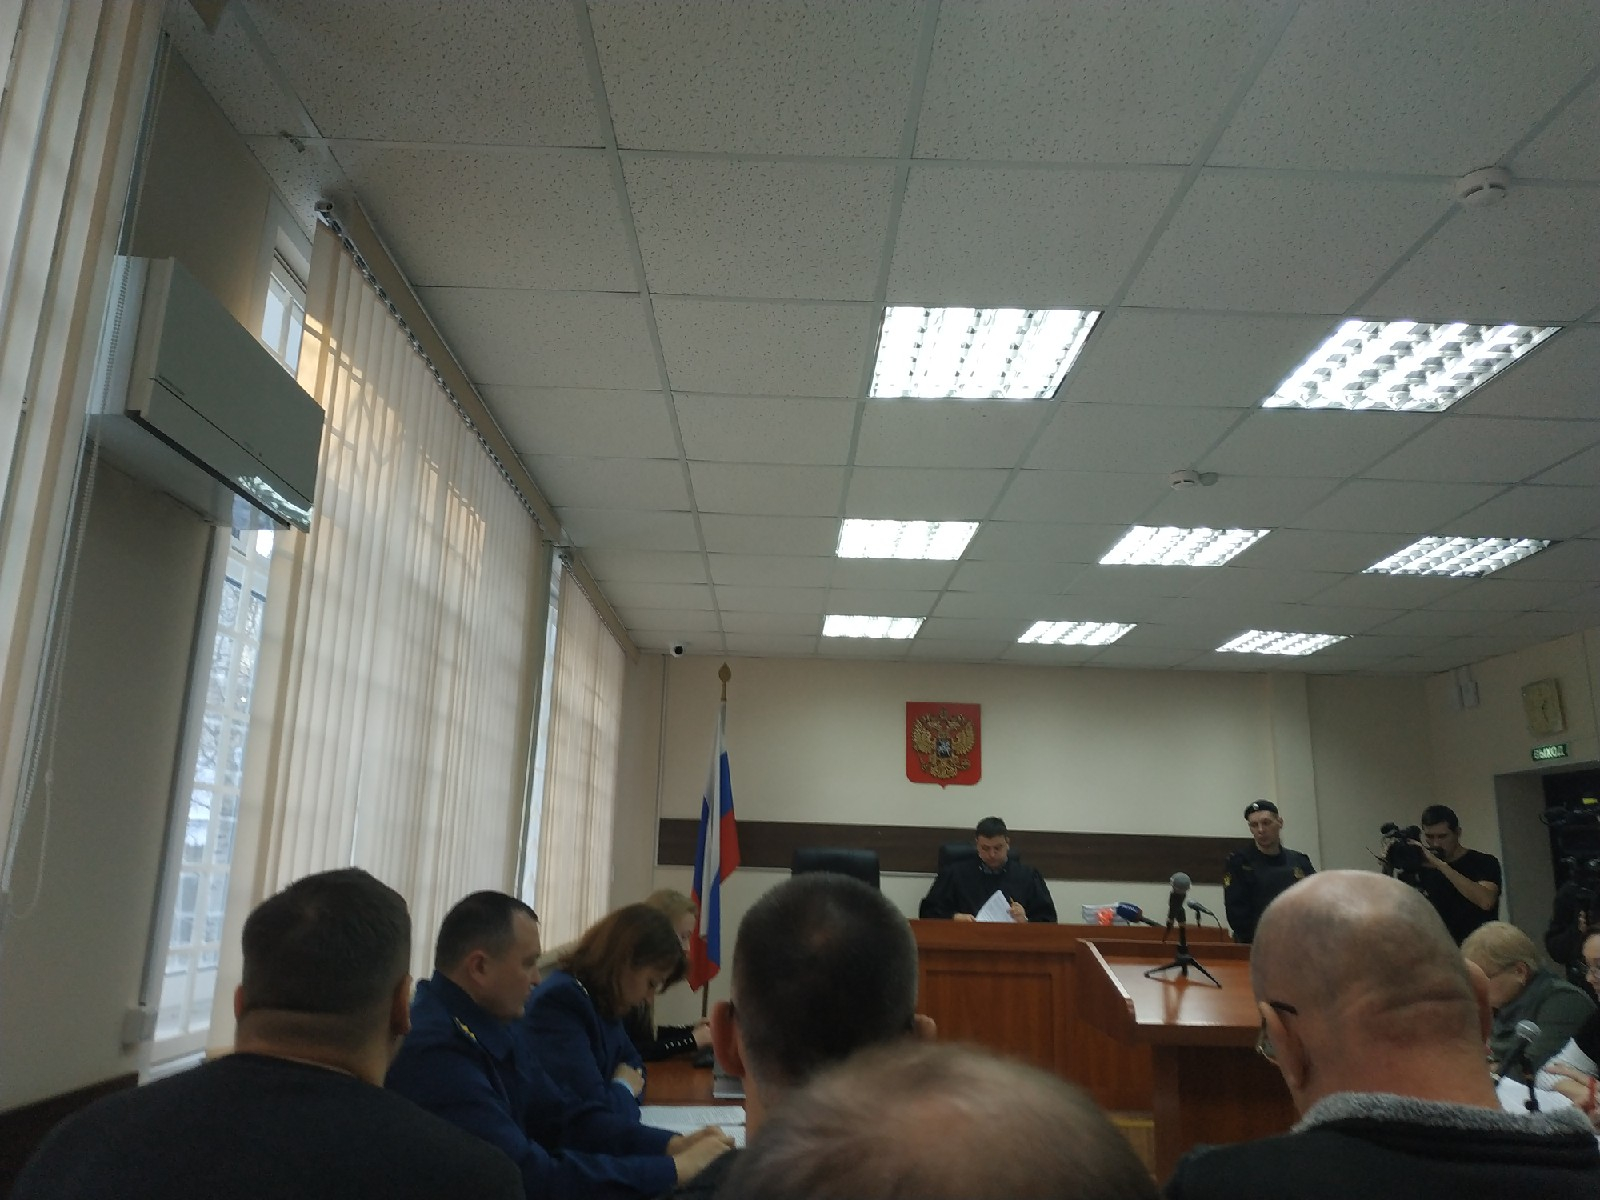 Трансляция: в Кирове депутата и чиновников судят по делу "Электронного проездного"